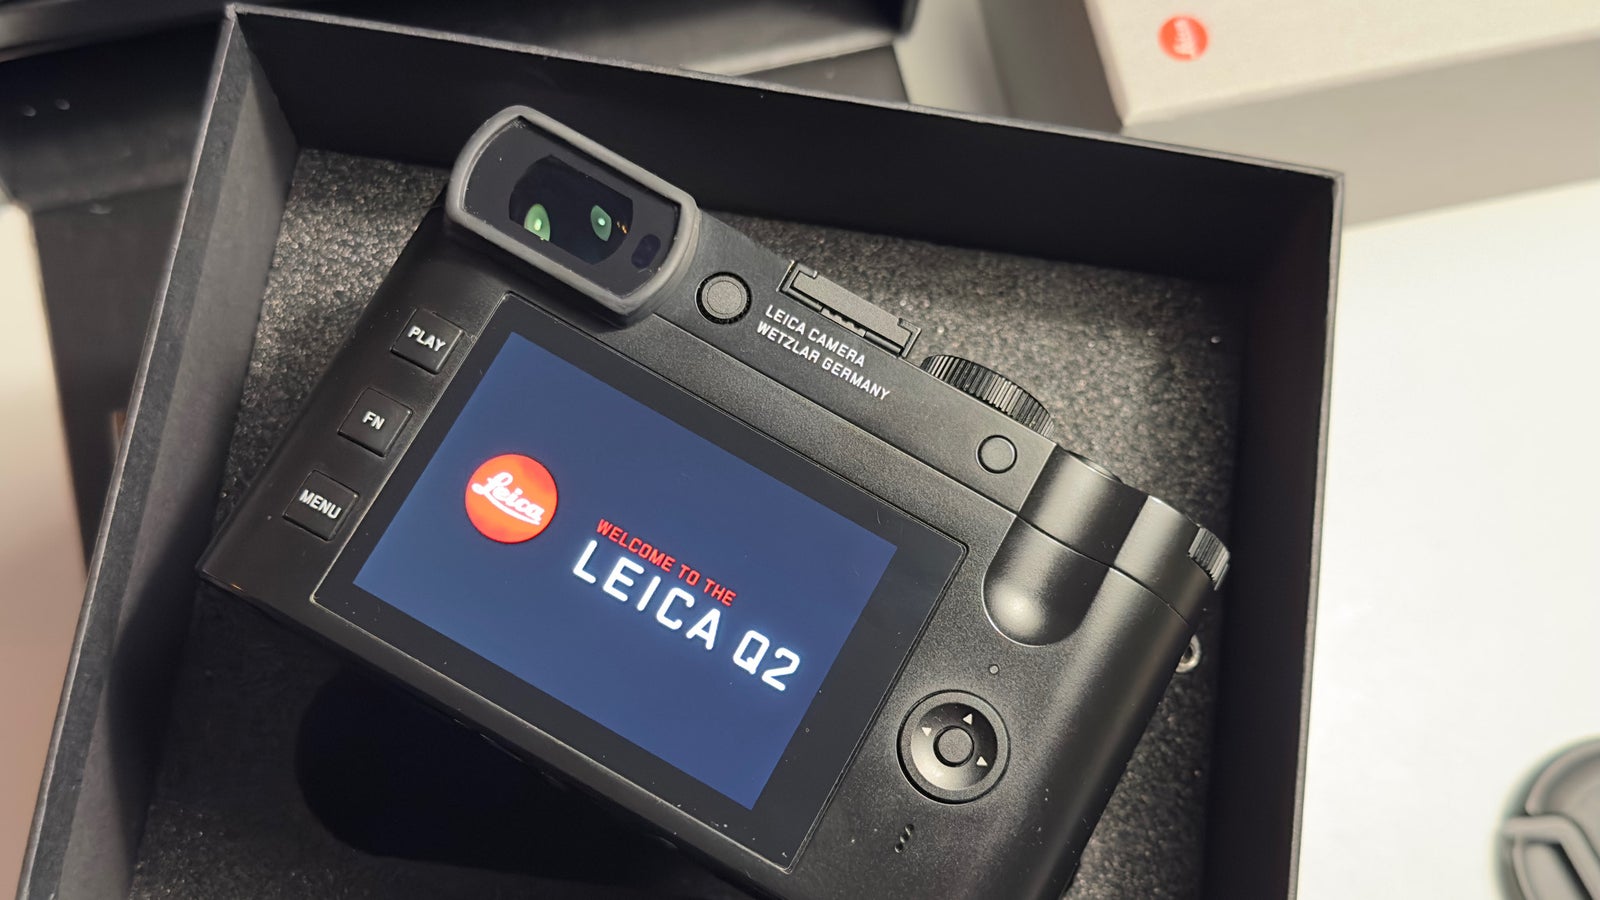 Leica, Q2, 47,3 megapixel megapixels